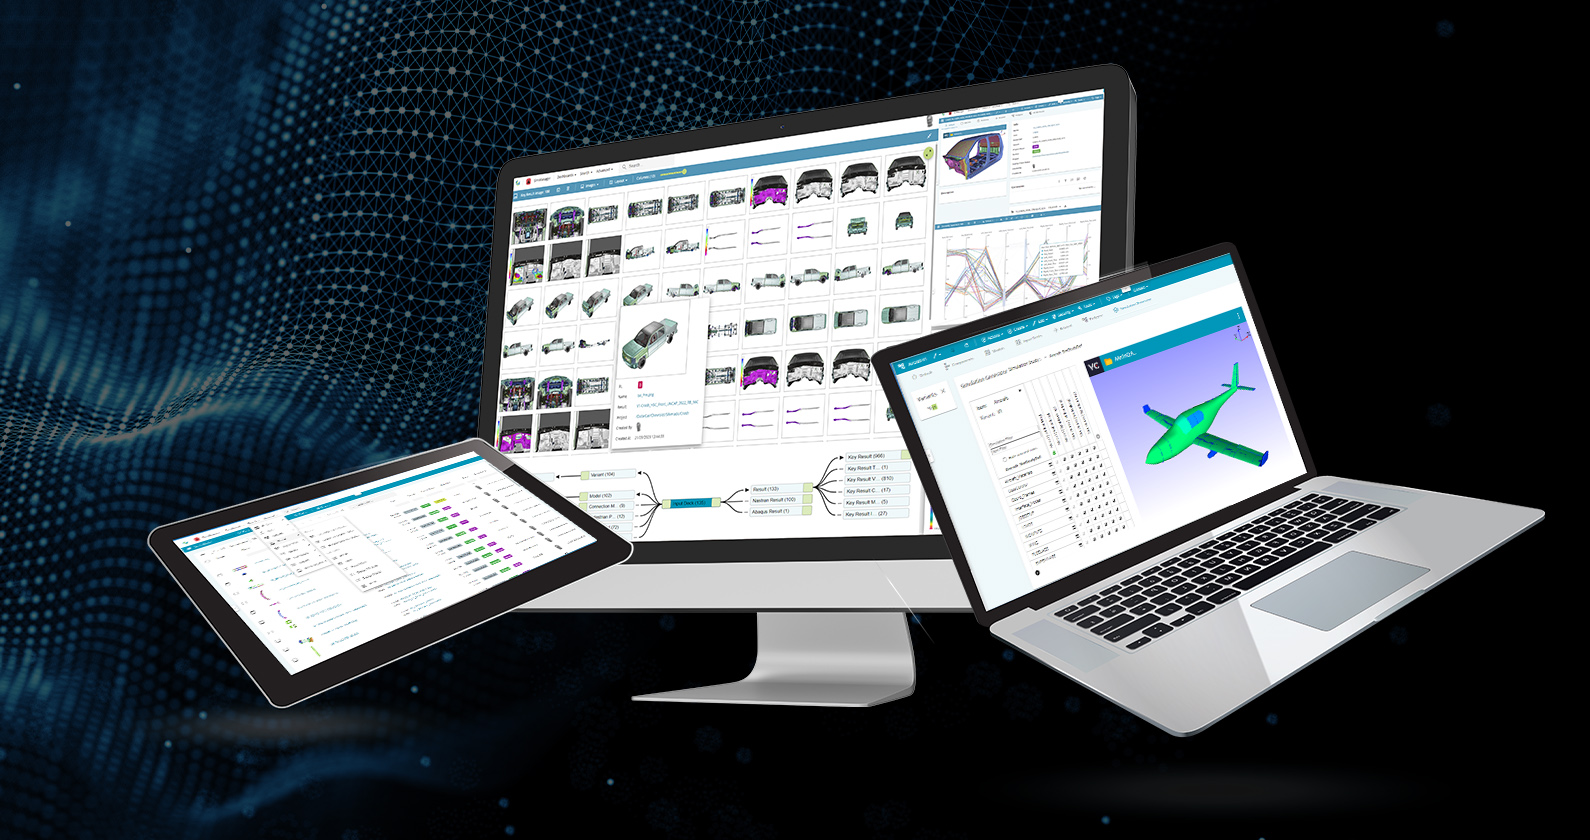 Die Simulationssoftware SimManager wird auf drei verschiedenen Geräten angezeigt – einem Tablet-, Desktop- und Laptop-Bildschirm auf einem dunkelblau-schwarzen Hintergrund.